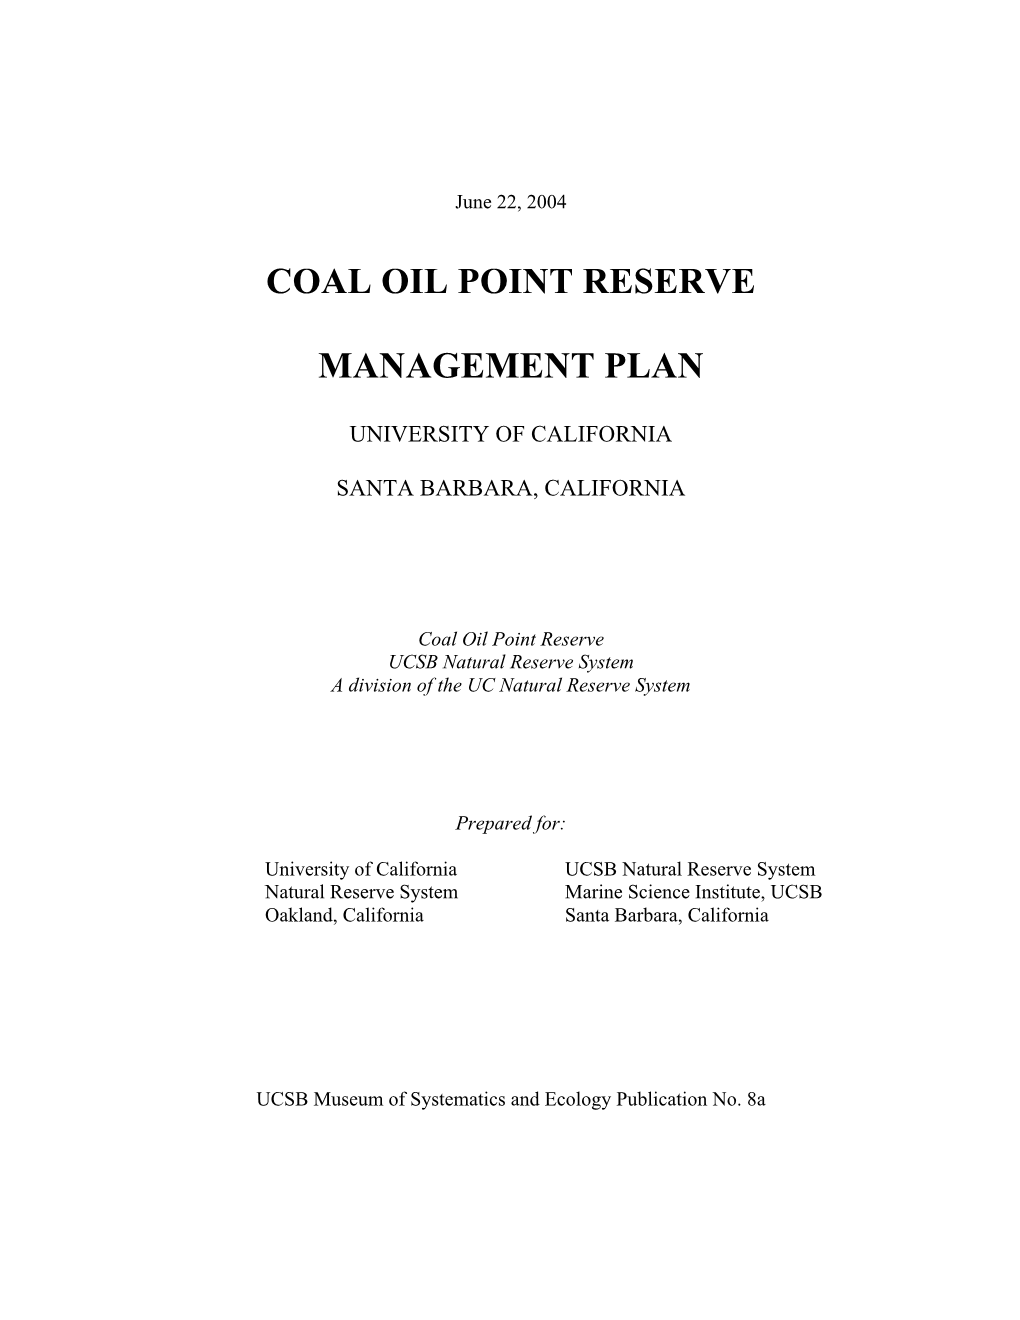 2004 COPR Management Plan